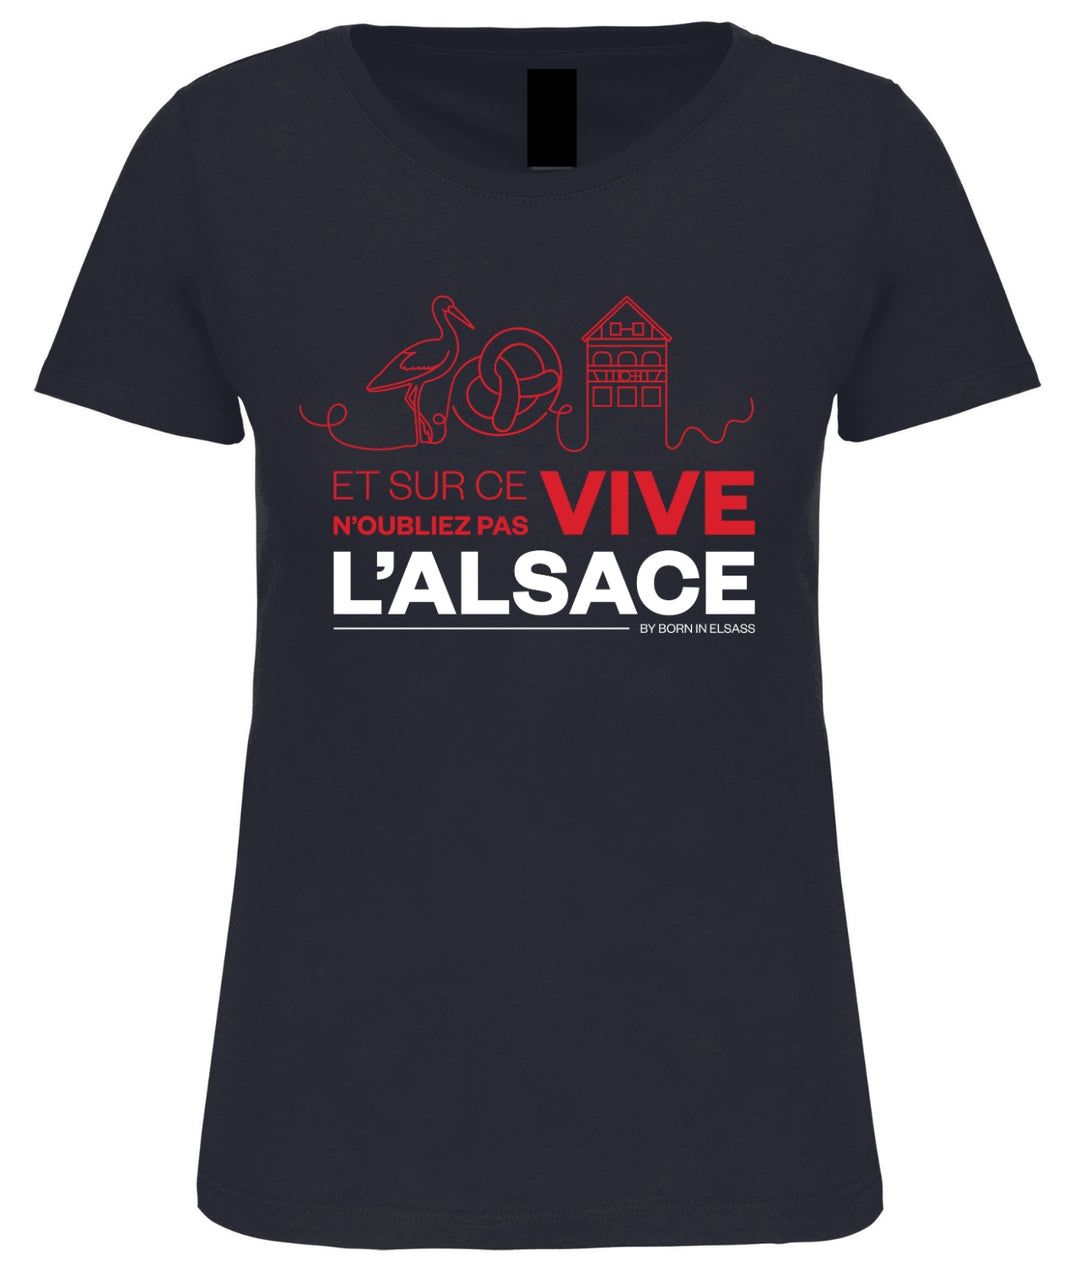 T-shirt Vive L'Alsace by Cookie - Version Femme de Born In Elsass